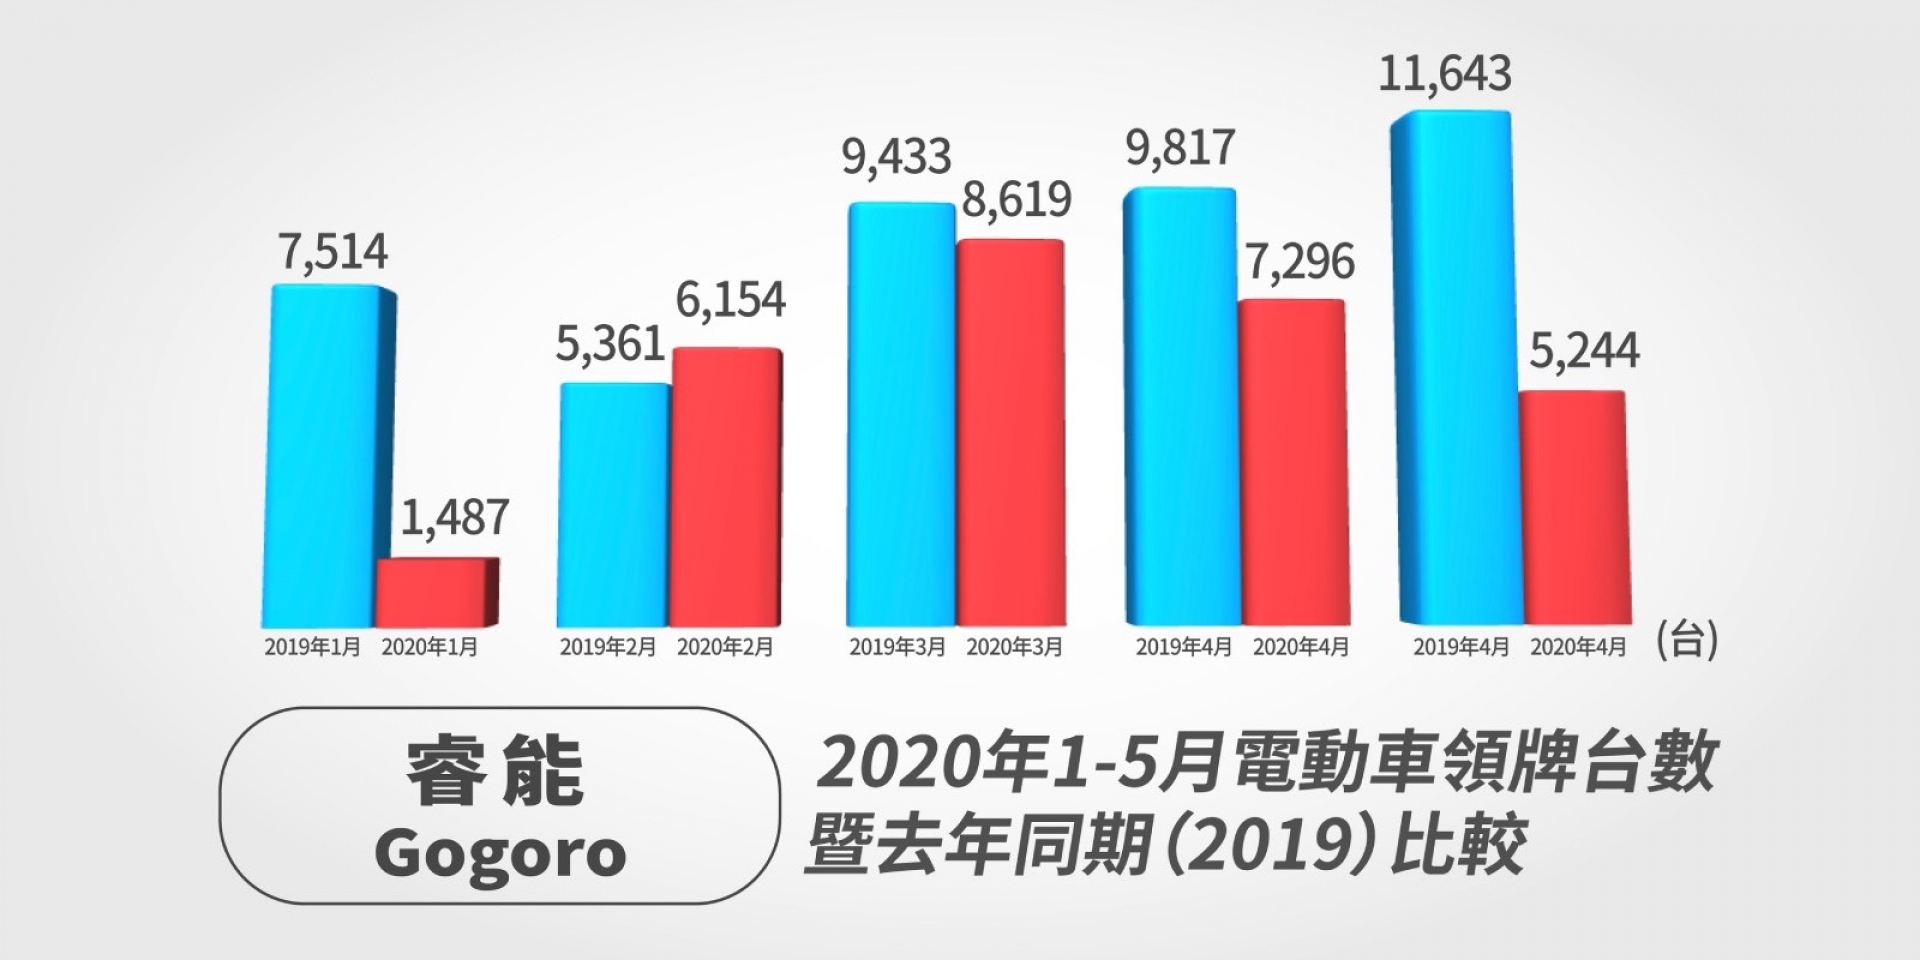 官方新聞稿。疫情趨緩五月機車市場回溫 KYMCO 34.3% 銷量成長最高